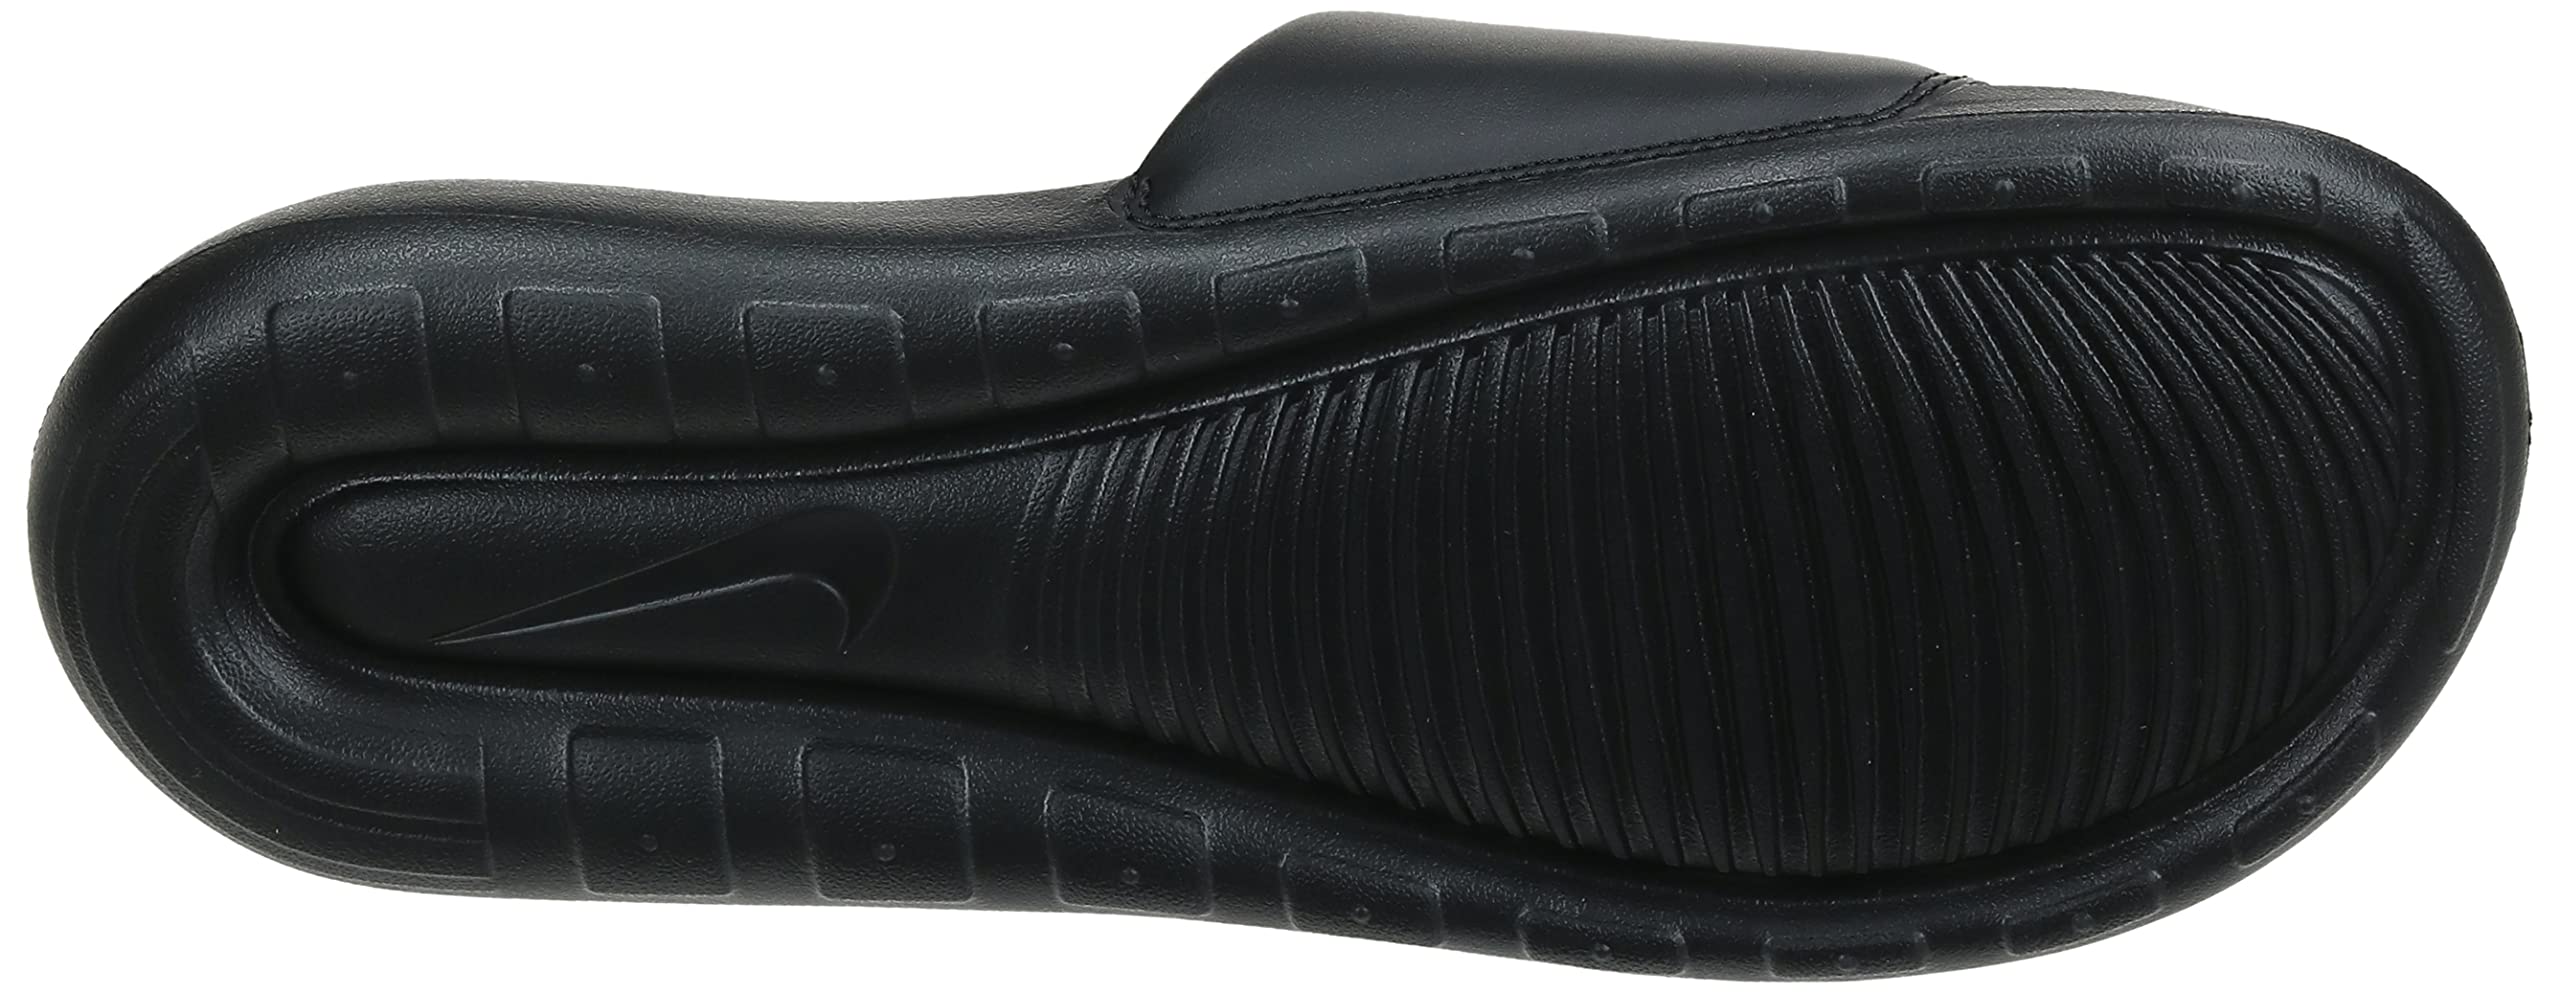 Nike Men's Slippers Mule, Black, 9